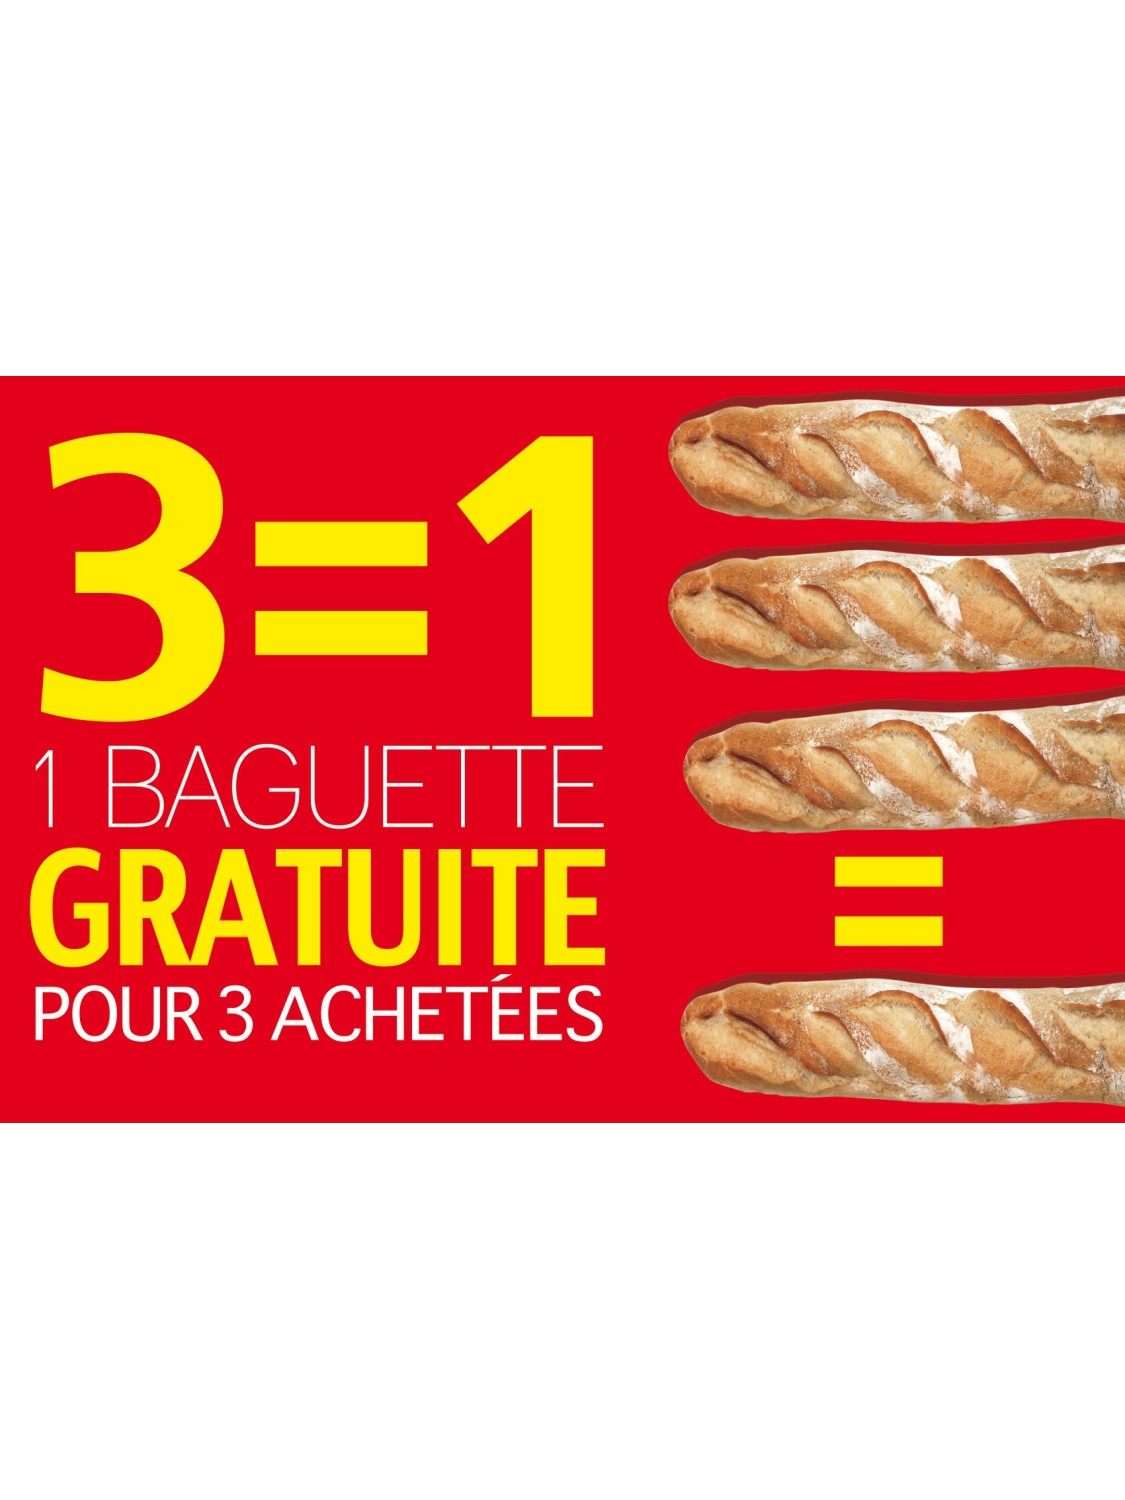 Affiche Boulangerie "3 égal 1 gratuite pour 3 achetées"